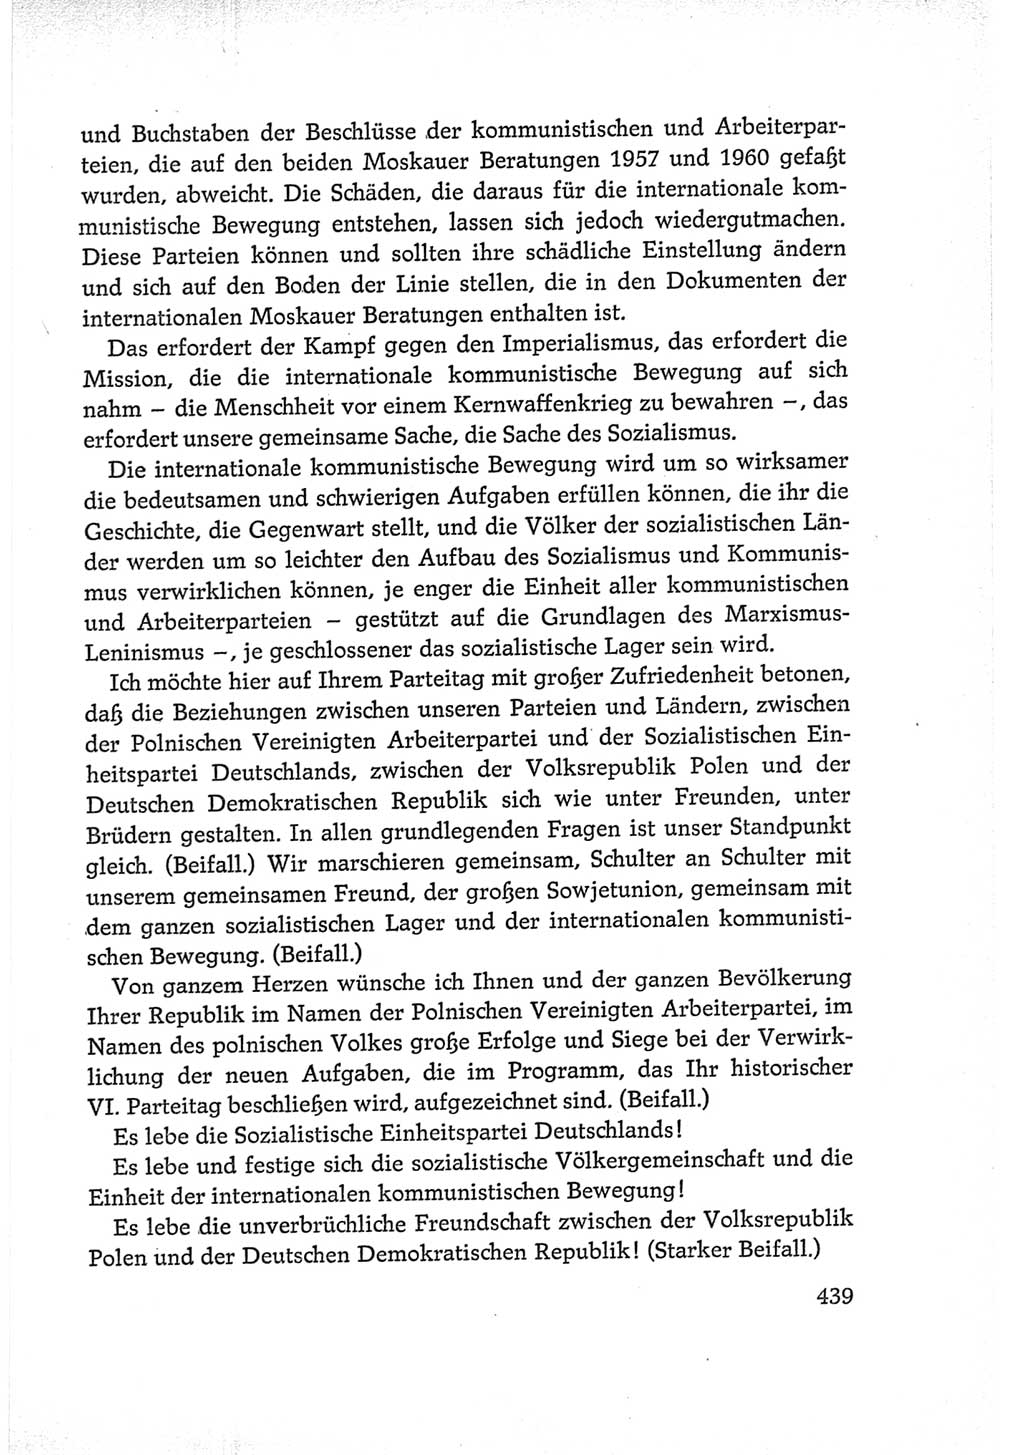 Protokoll der Verhandlungen des Ⅵ. Parteitages der Sozialistischen Einheitspartei Deutschlands (SED) [Deutsche Demokratische Republik (DDR)] 1963, Band Ⅰ, Seite 439 (Prot. Verh. Ⅵ. PT SED DDR 1963, Bd. Ⅰ, S. 439)